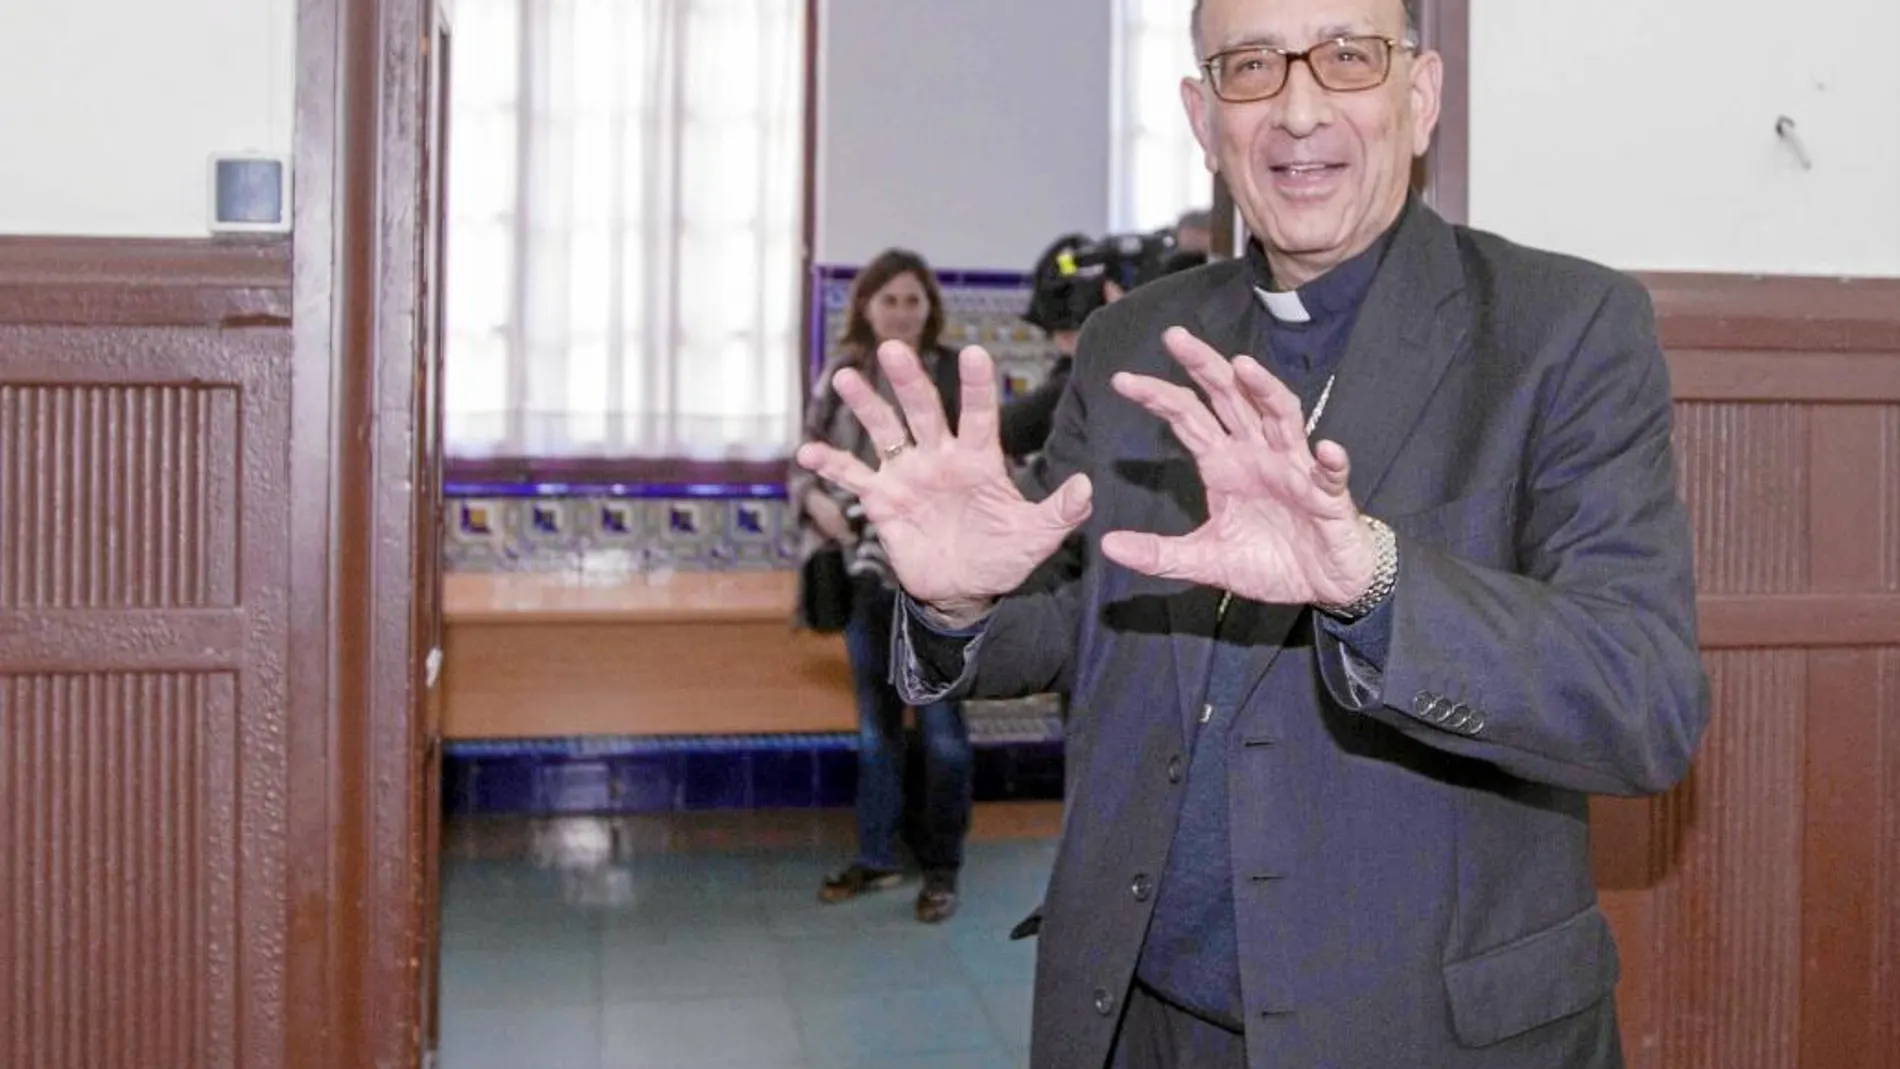 El cardenal arzobispo de Barcelona, Juan José Omella, negó «categóricamente» que le hablaran de violencia